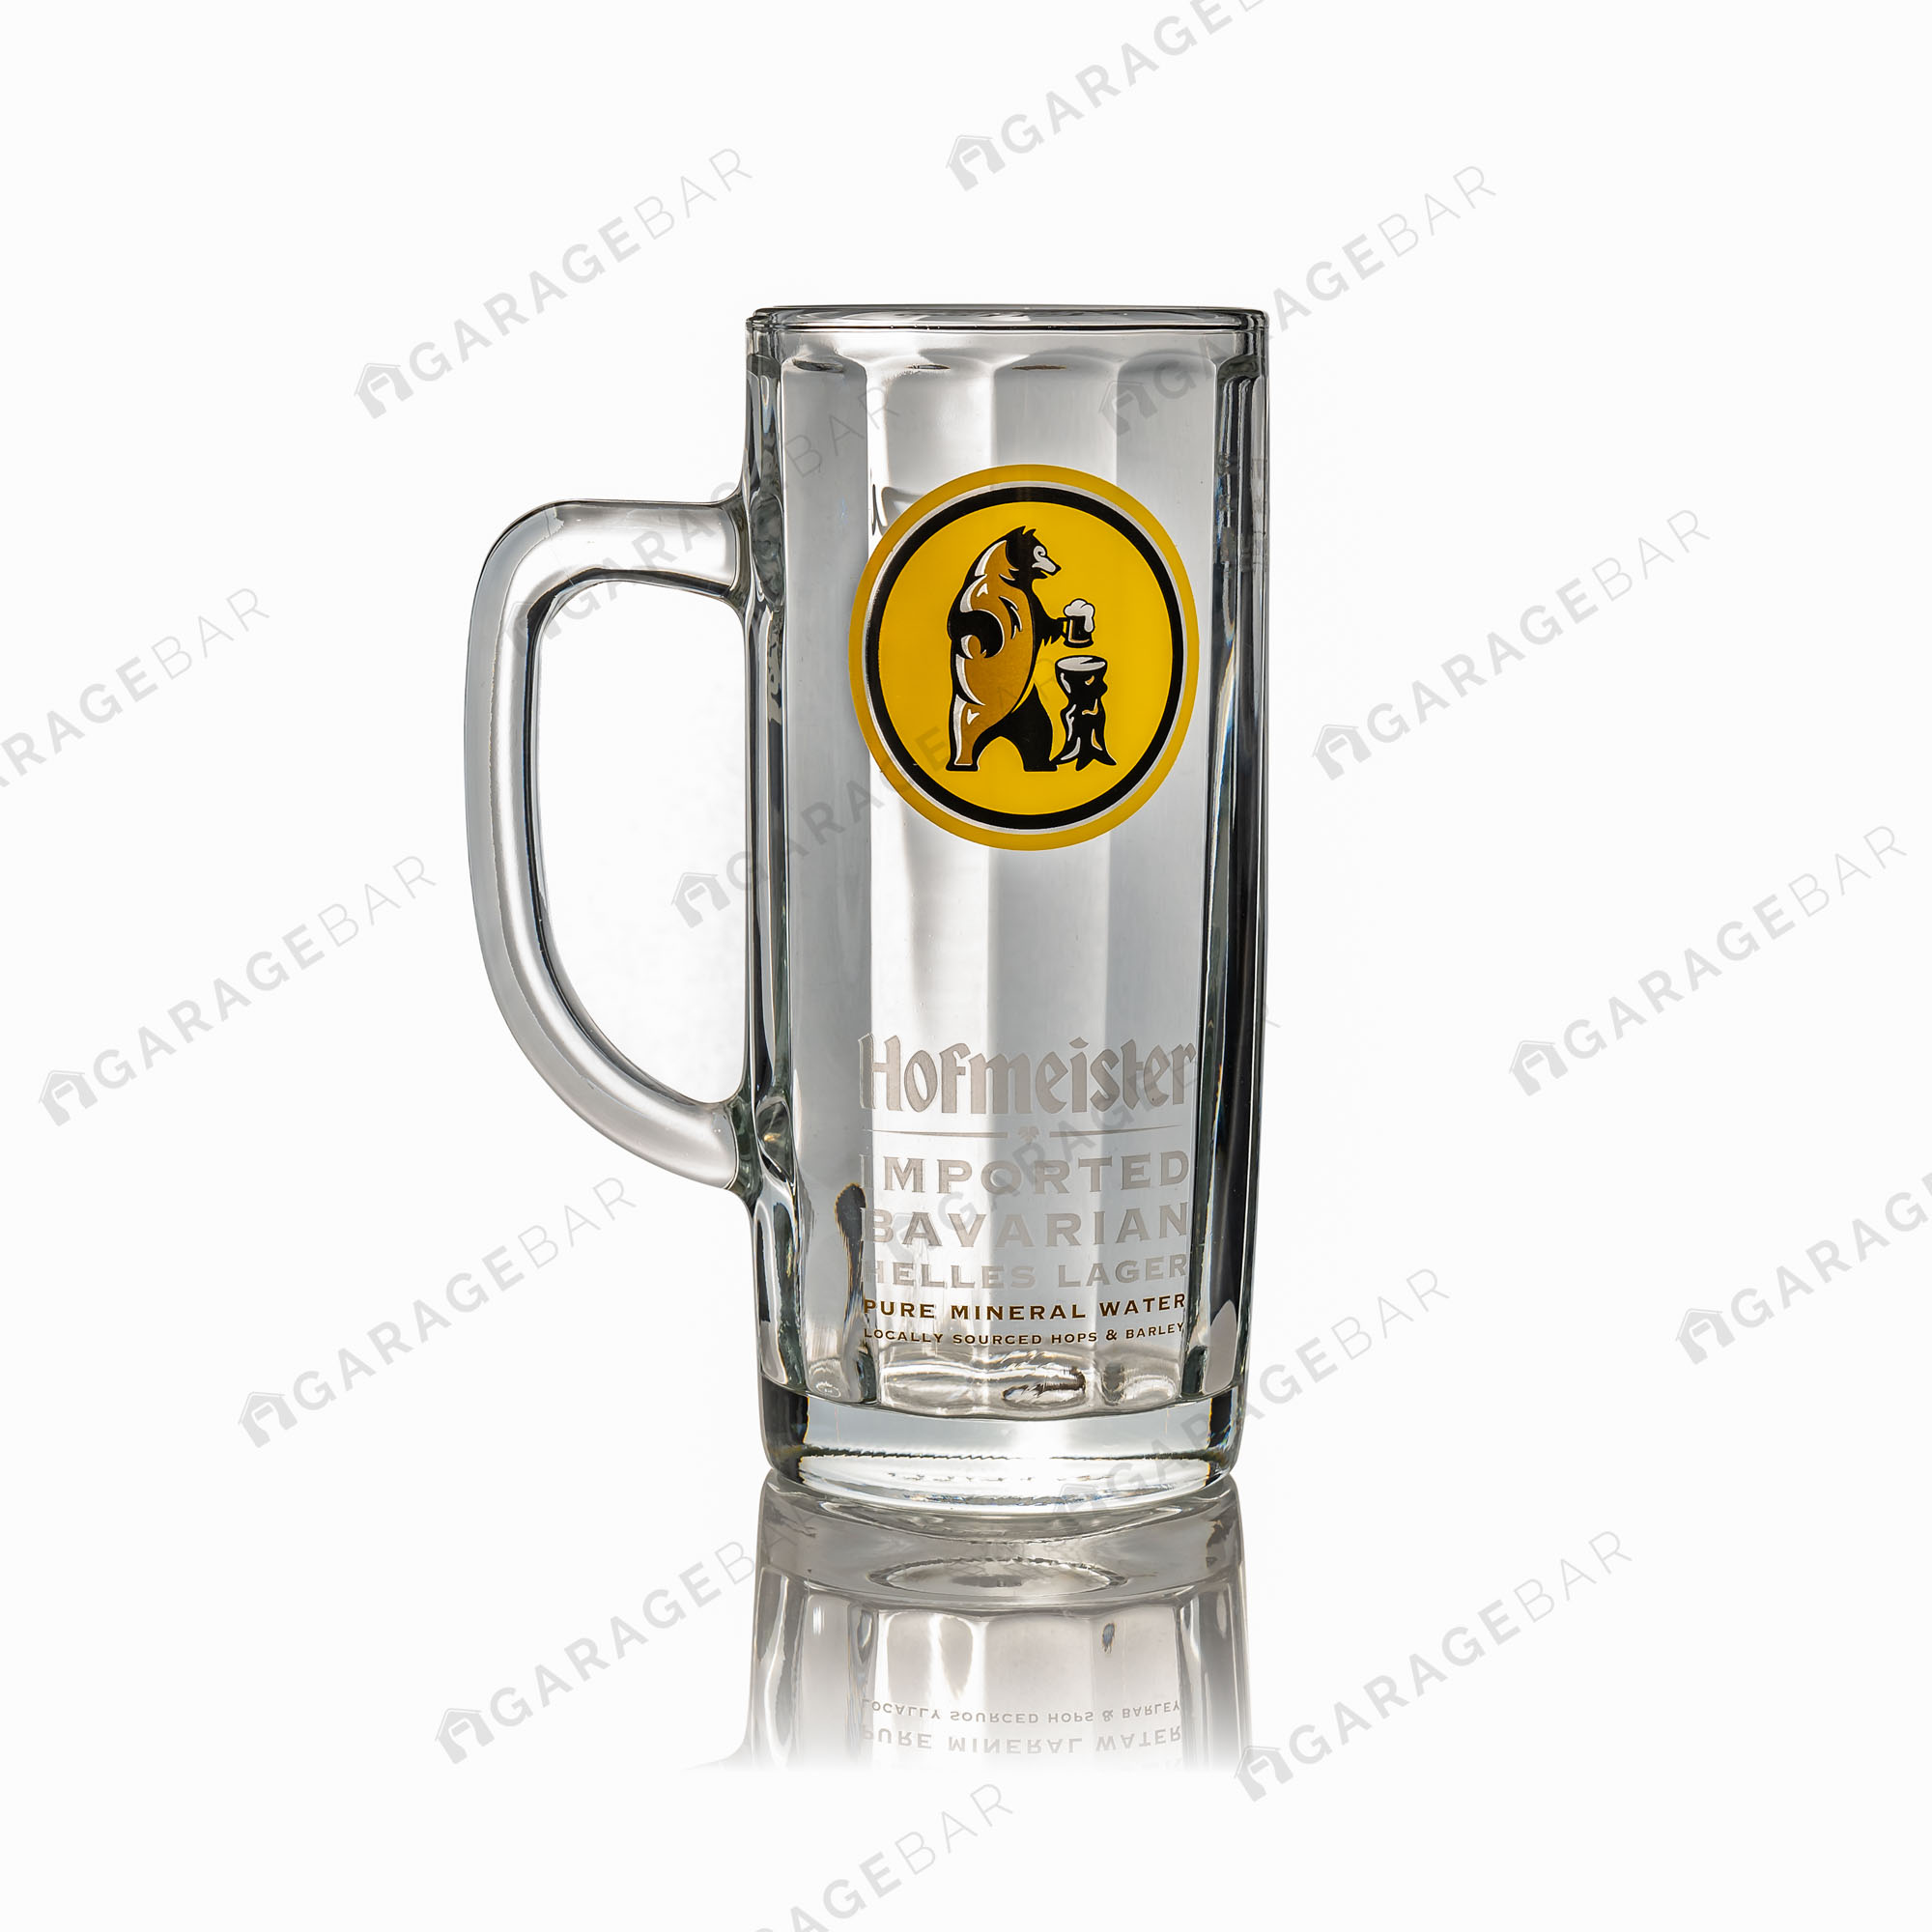 Hofmeister Tankard Pint Beer Glass